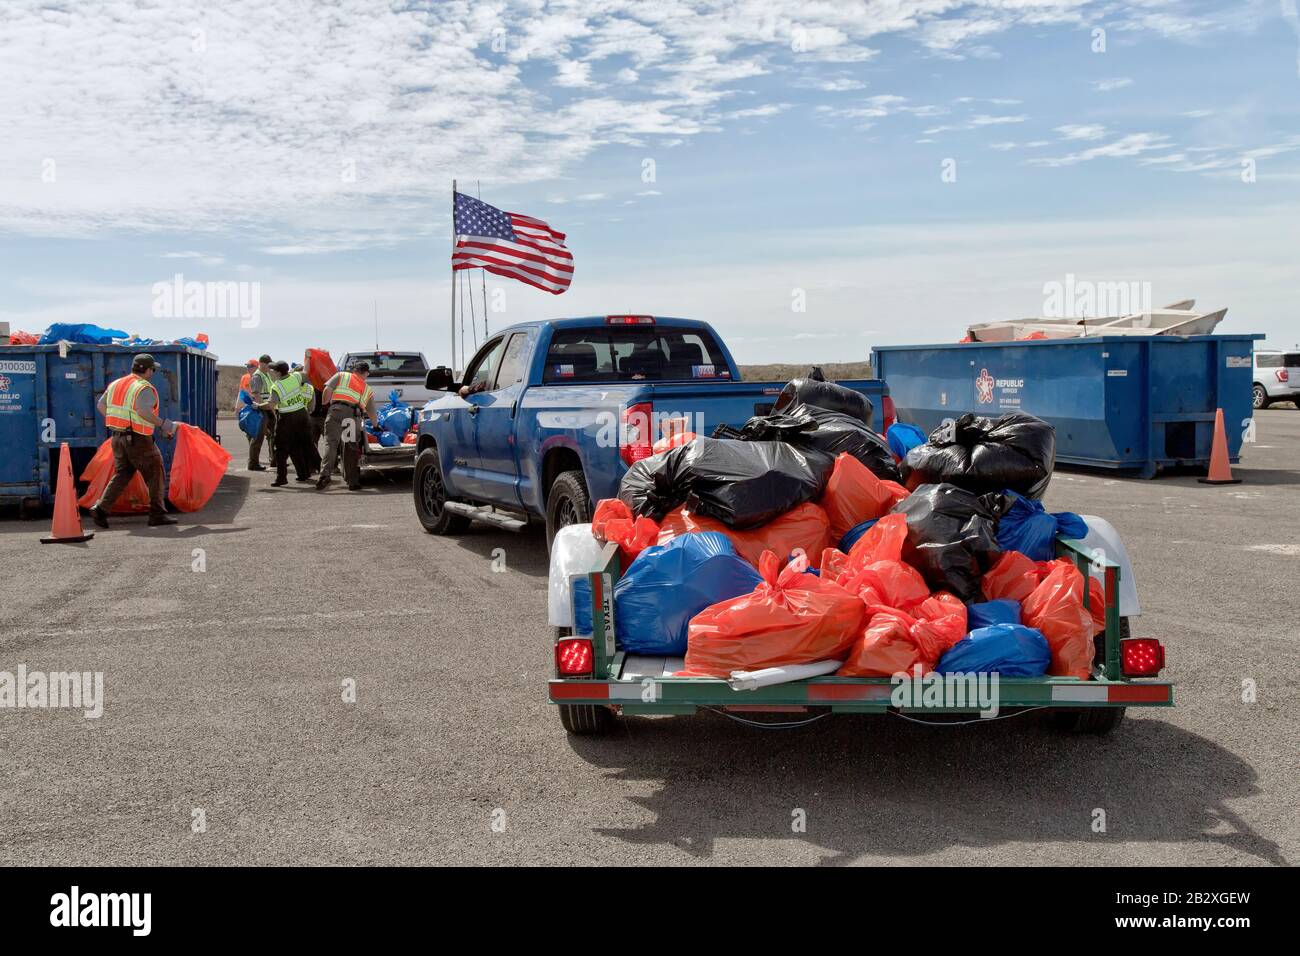 Anhänger, die mit marinen Trümmern und Küstenablagerungen beladen sind, die von Freiwilligen gesammelt wurden, Parkpersonal und Freiwillige, die in Mülltonnen einlagern. Amerikanische Flagge. Stockfoto